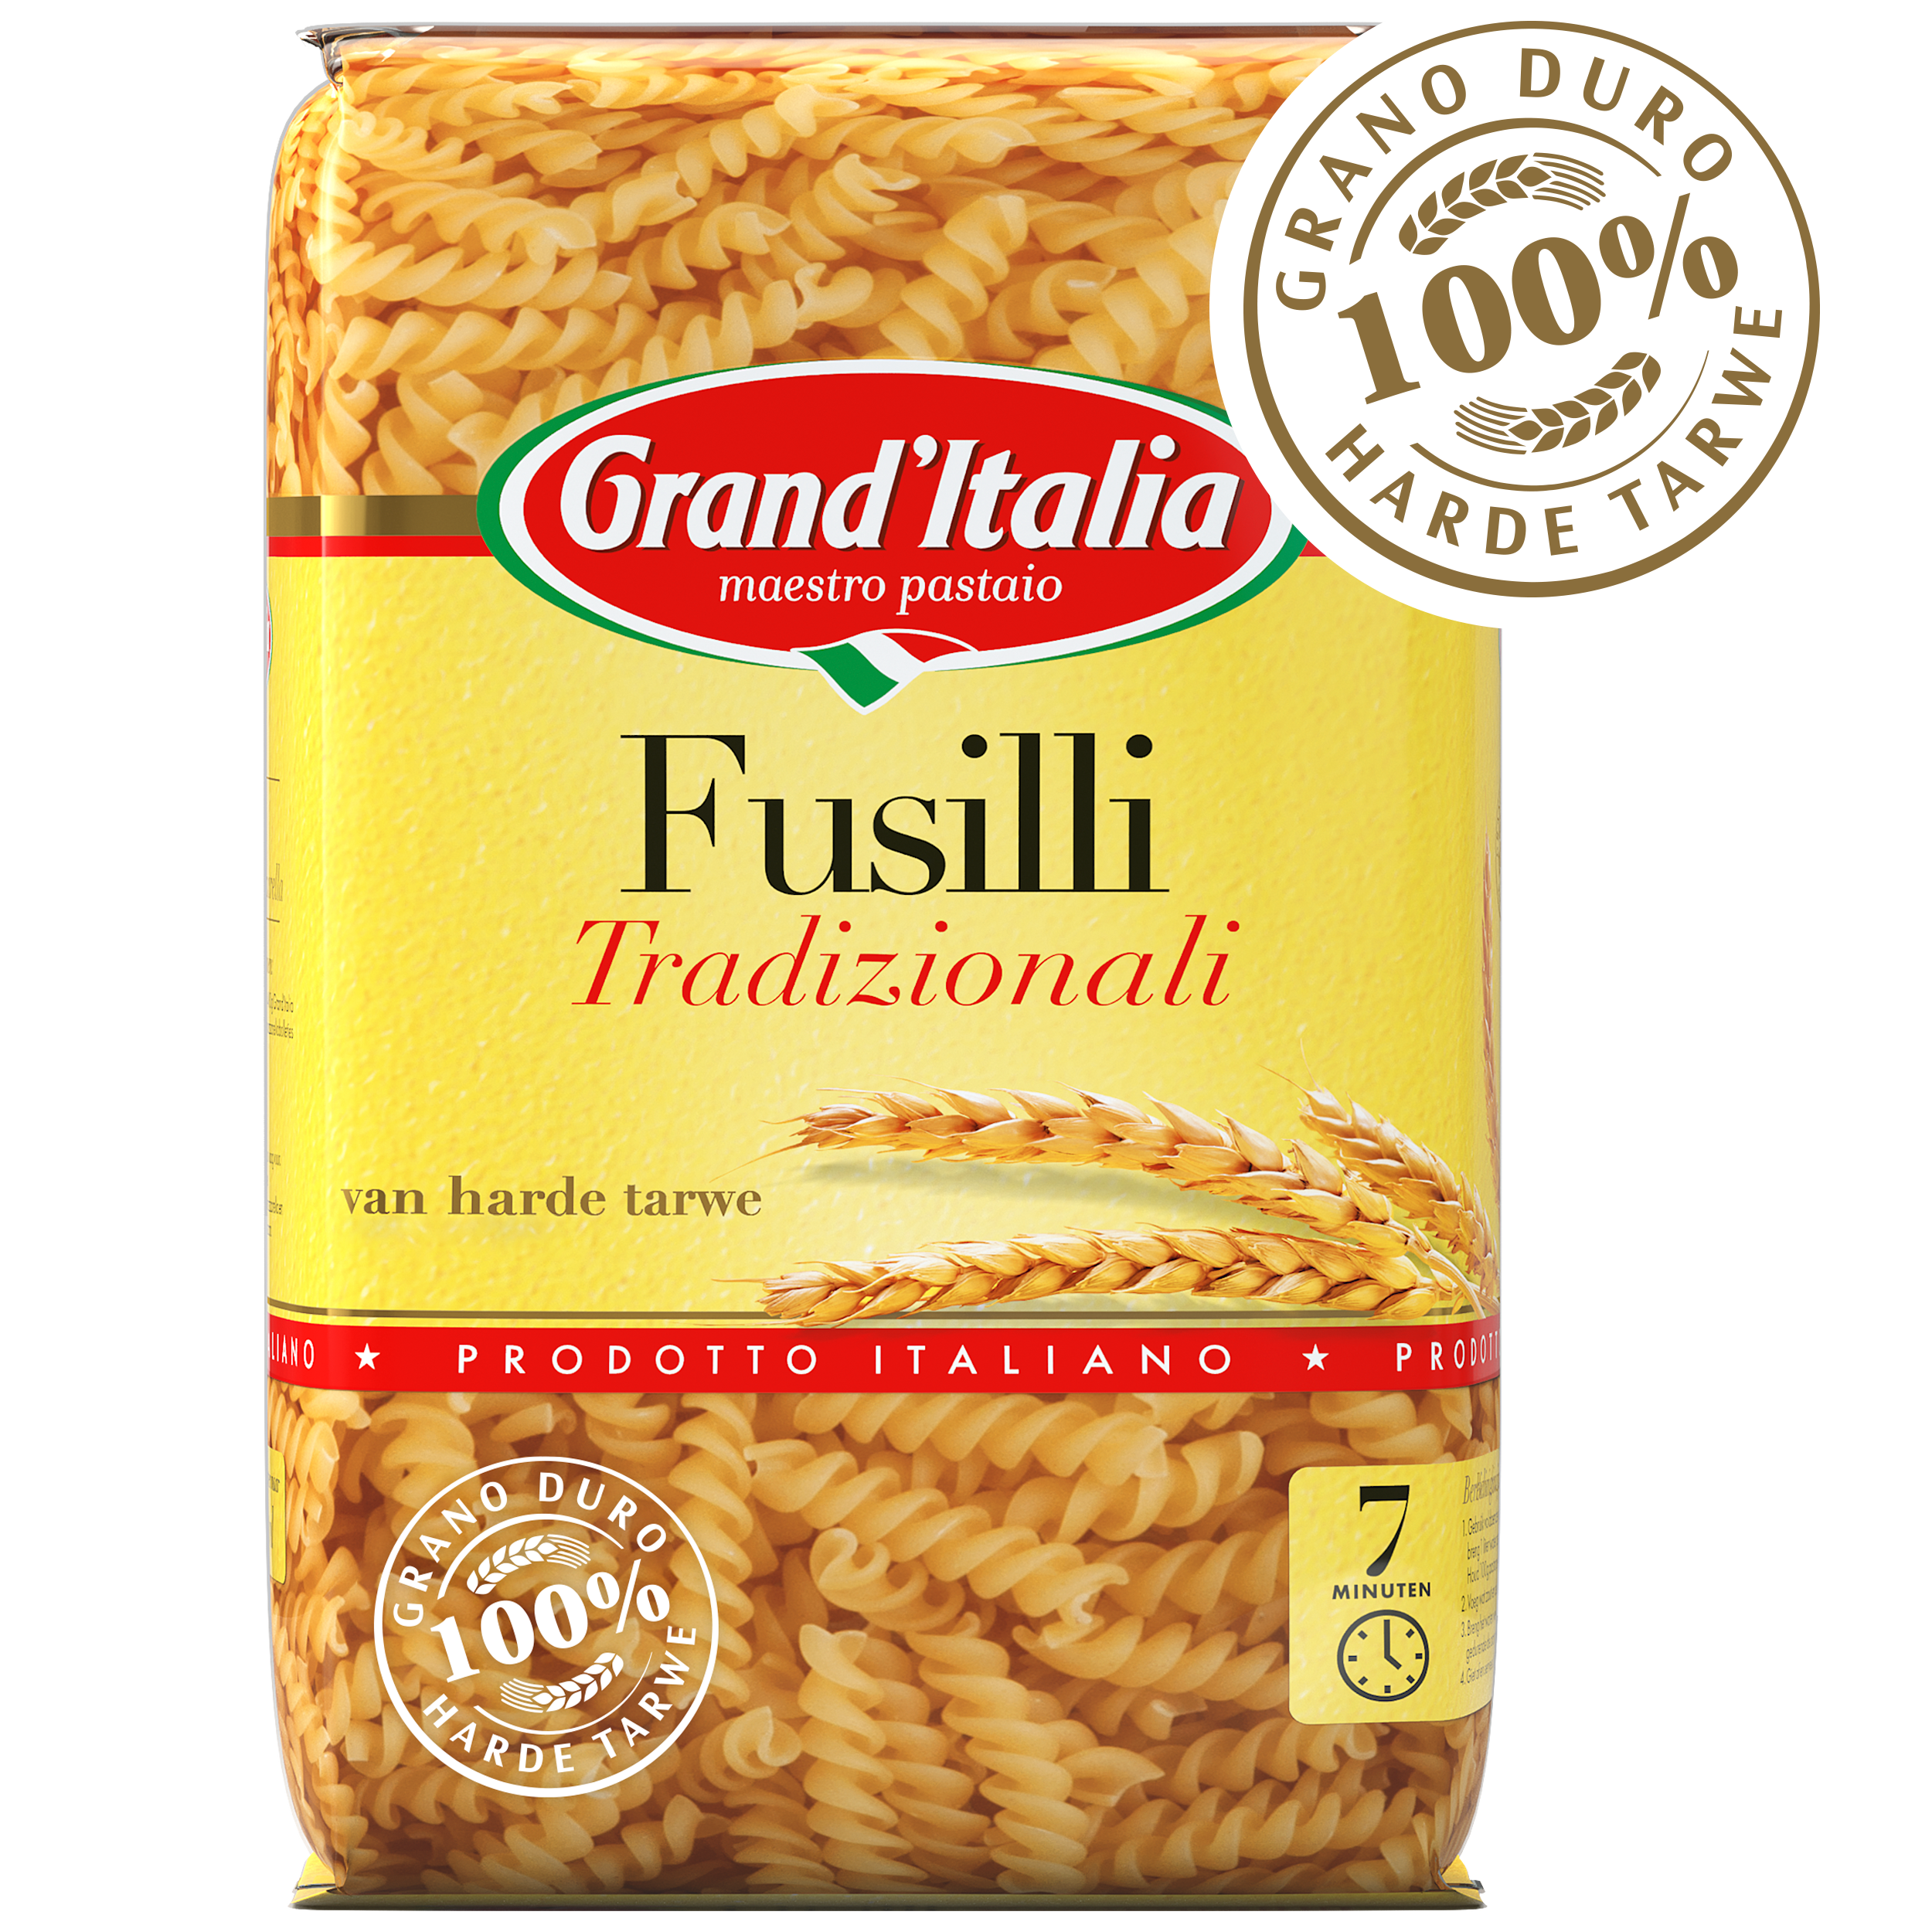 Pasta Fusilli Tradizionali 500g claim Grand'Italia